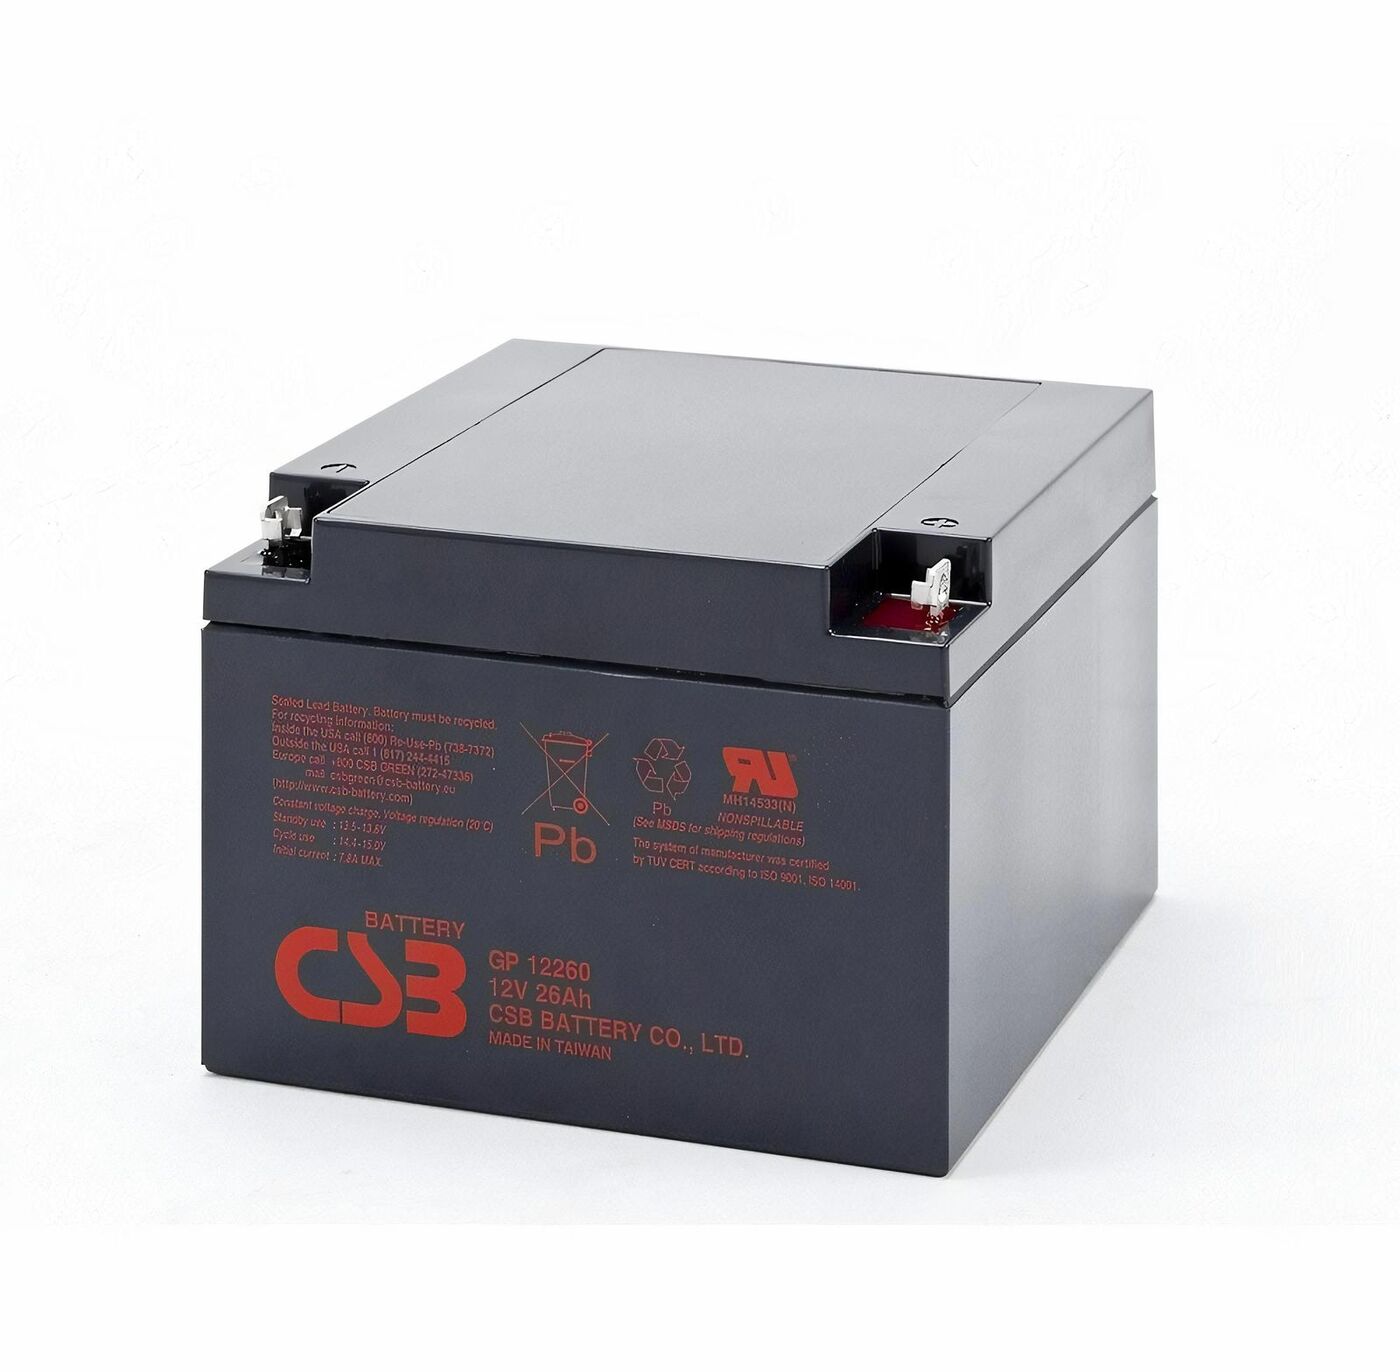 Свинцово-кислотный аккумулятор CSB GP 12260 12V 26AH 239 кислотный грунт detop